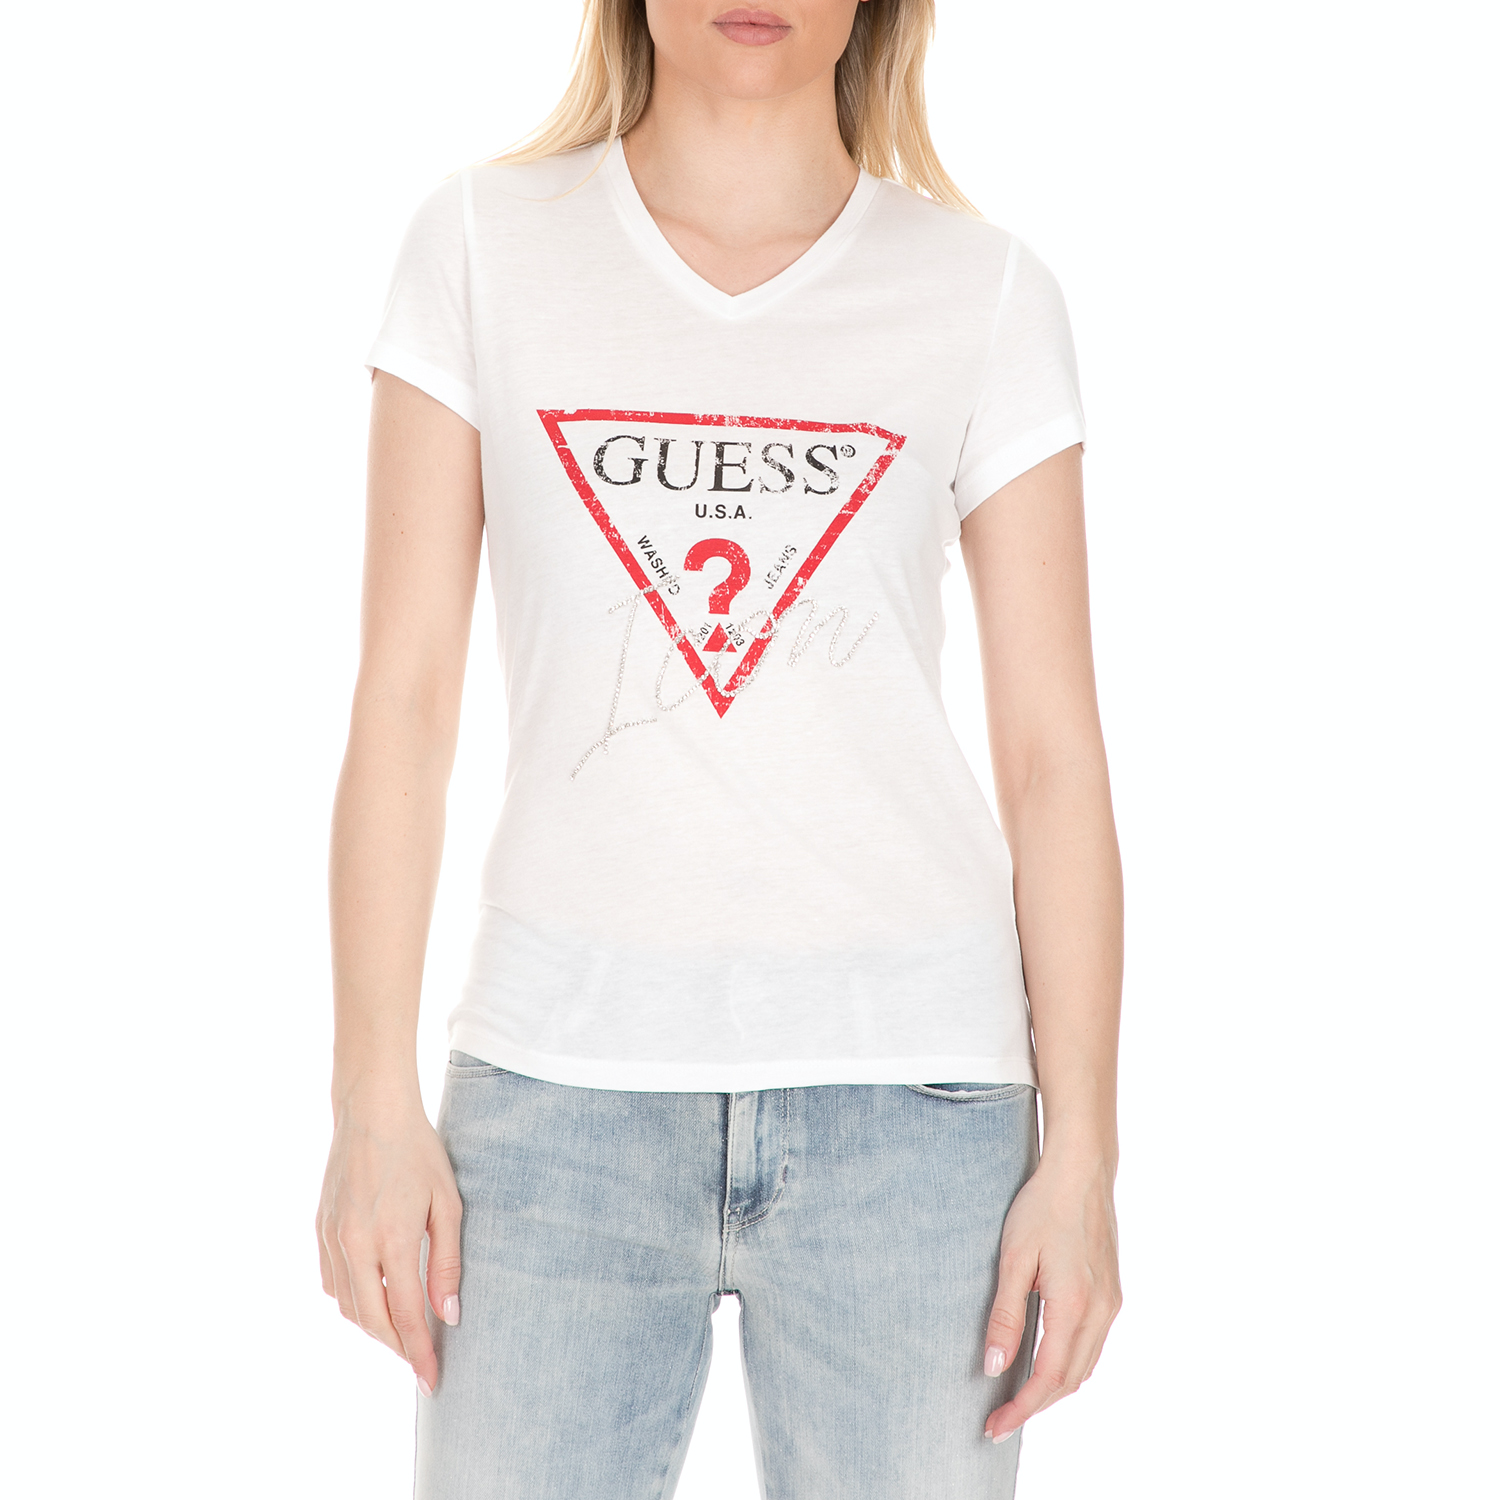 Γυναικεία/Ρούχα/Μπλούζες/Κοντομάνικες GUESS - Γυναικείο t-shirt με στάμπα GUESS λευκό